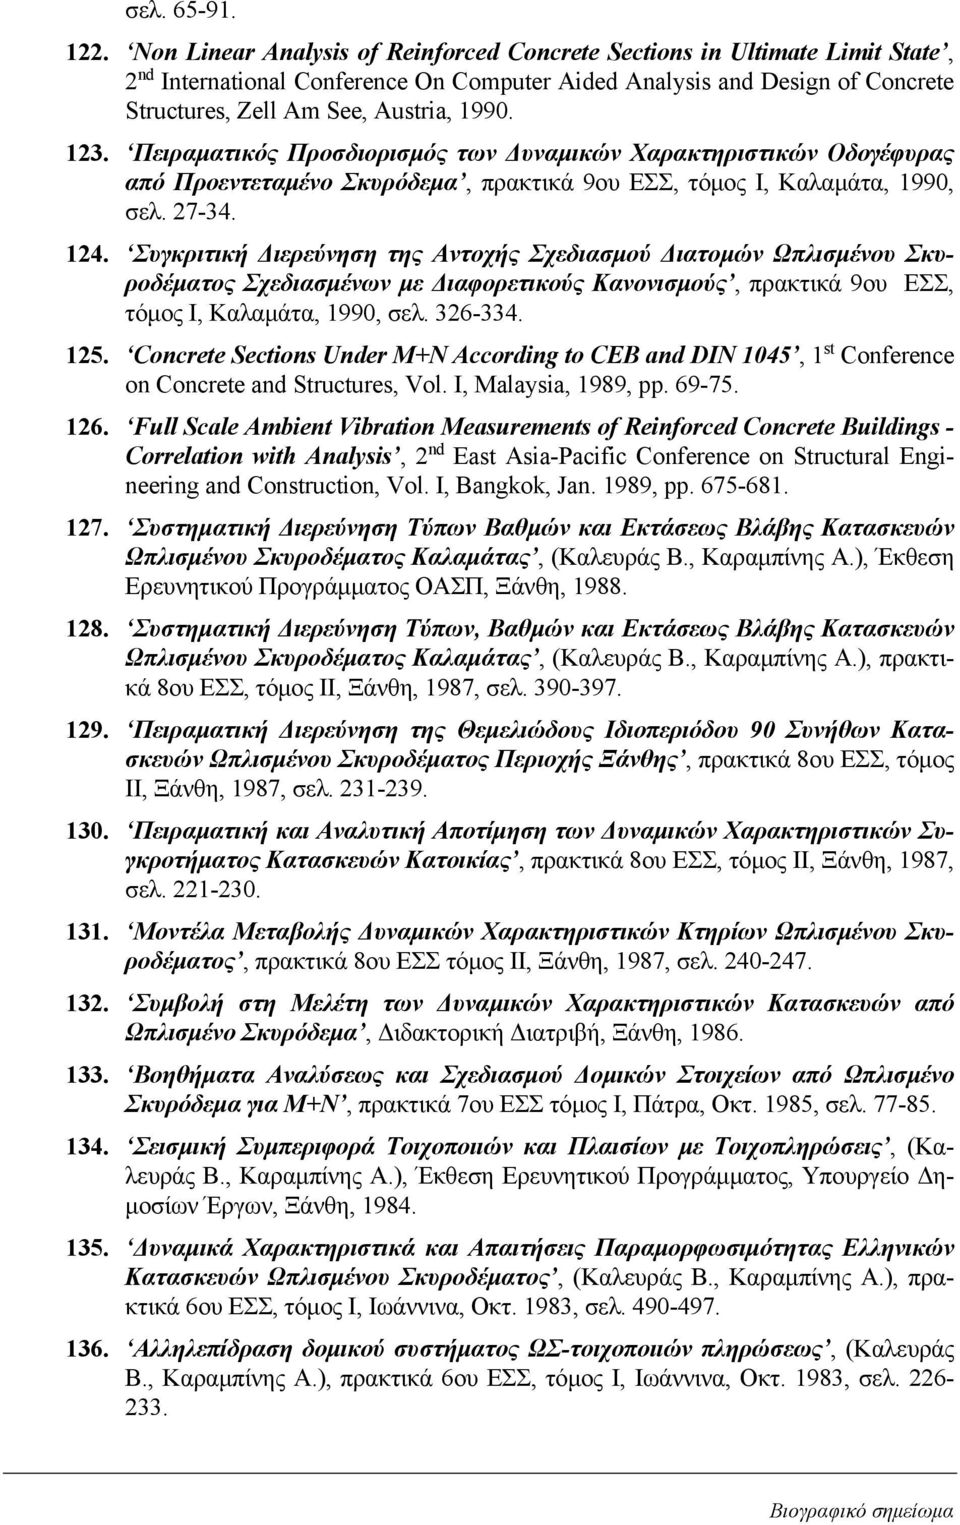 123. Πειραματικός Προσδιορισμός των Δυναμικών Χαρακτηριστικών Οδογέφυρας από Προεντεταμένο Σκυρόδεμα, πρακτικά 9ου ΕΣΣ, τόμος Ι, Καλαμάτα, 1990, σελ. 27-34. 124.